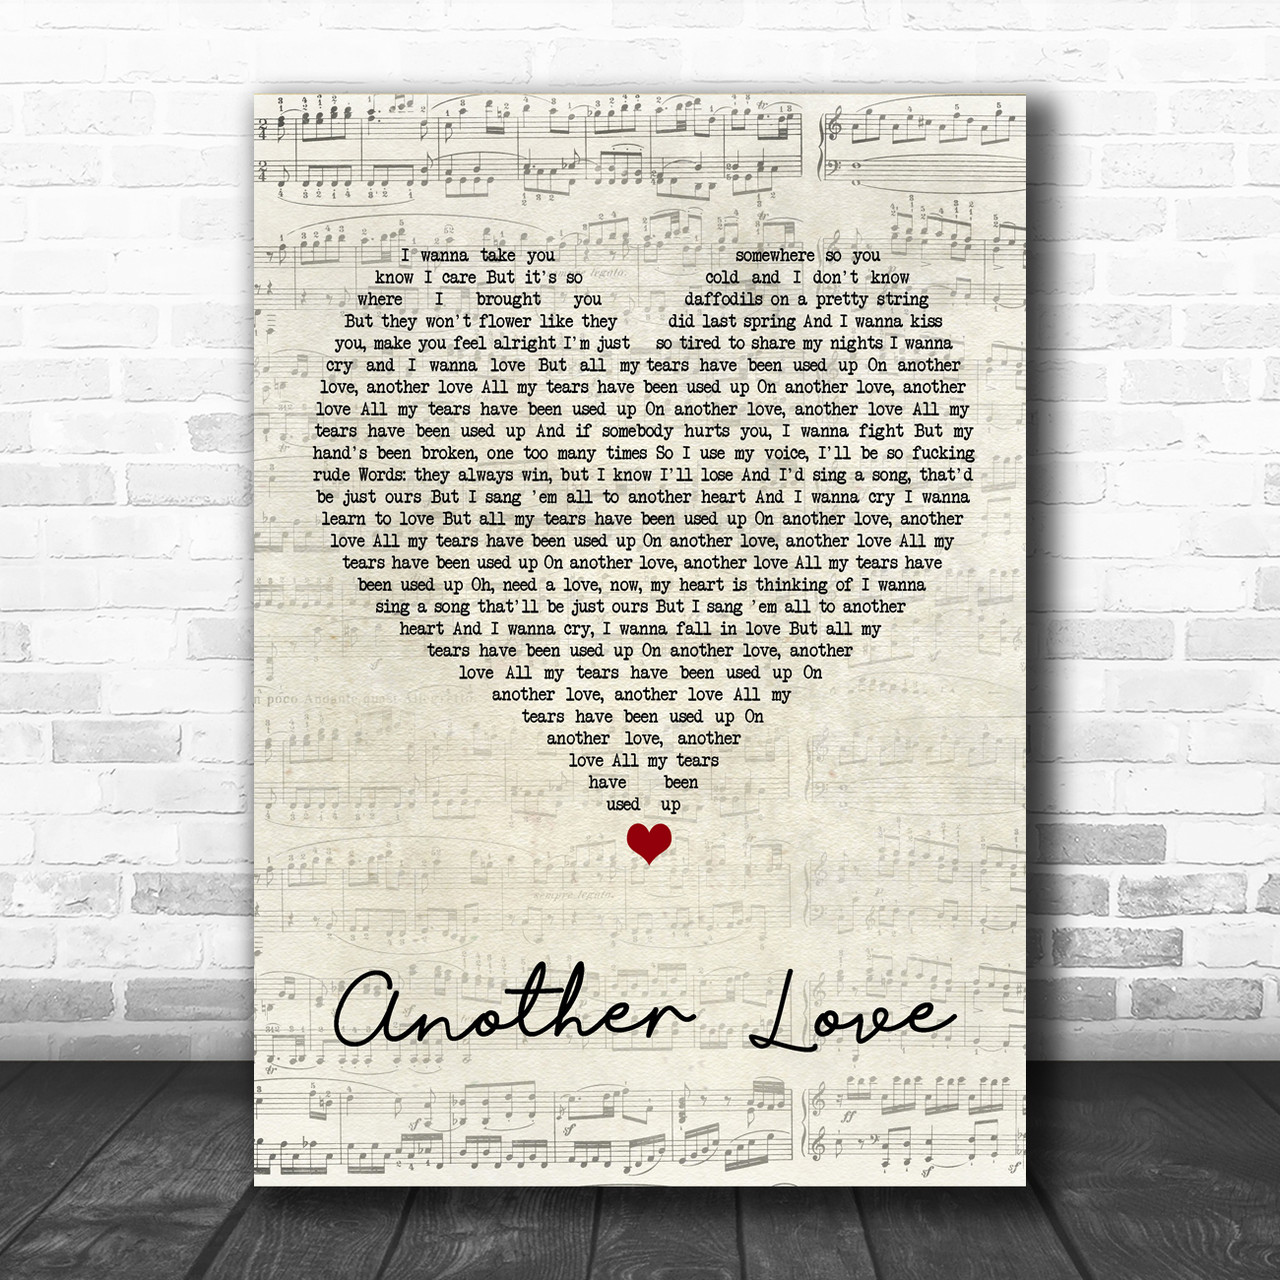 Another love - Tom odell - Another Love Tom Odell I wanna take you